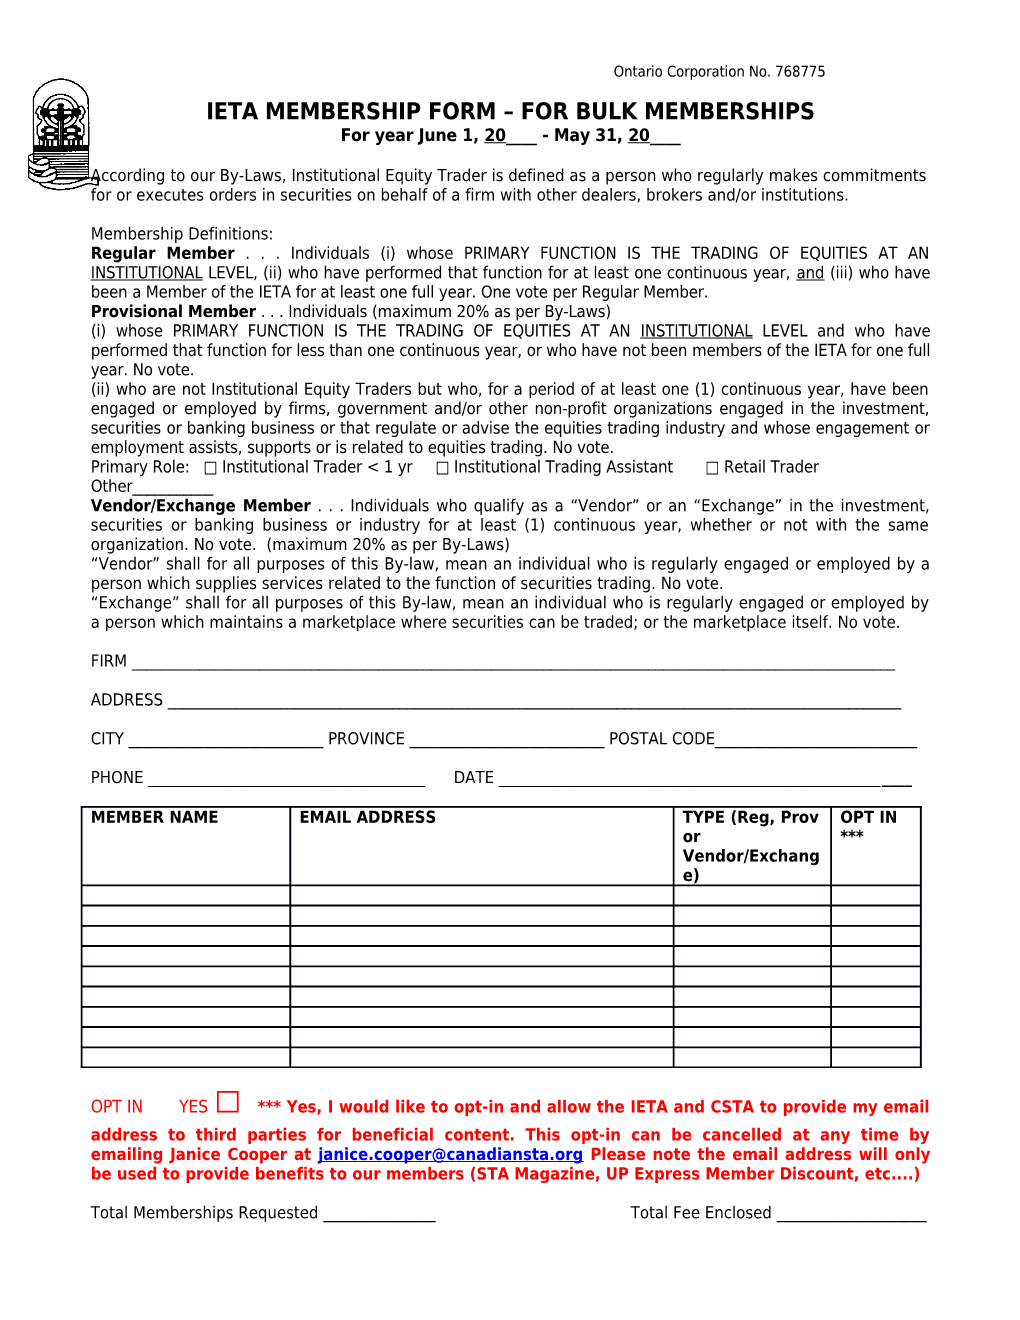 Ieta Membership Form for Bulk Memberships